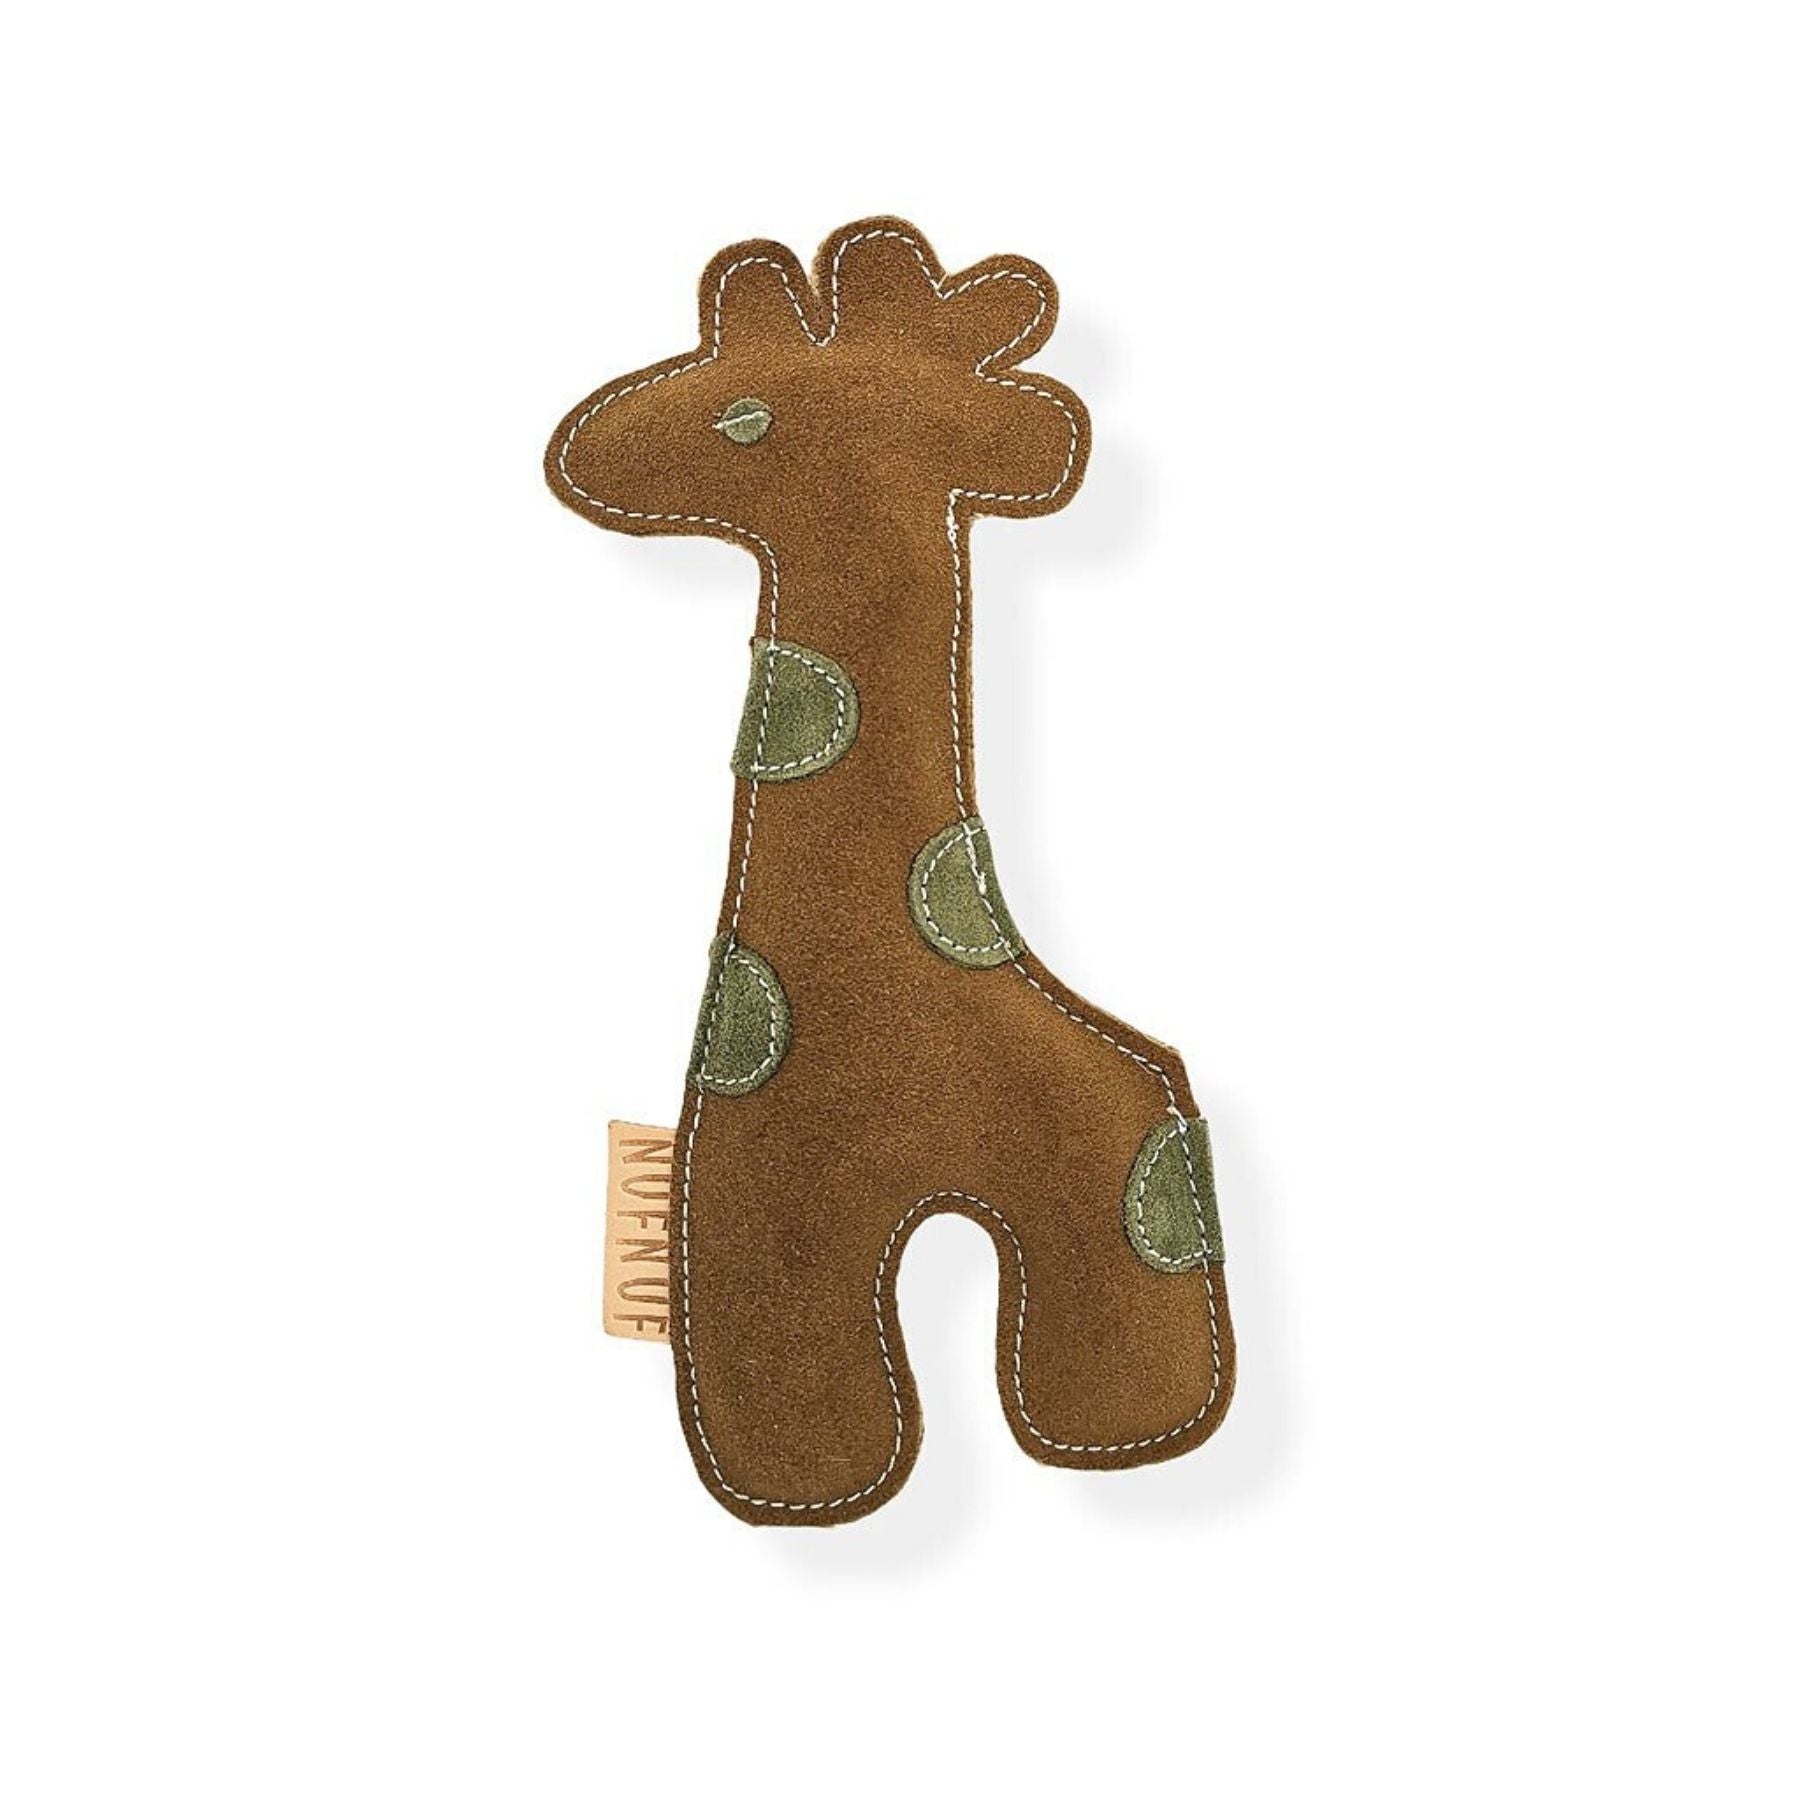 Das süße Spielzeug für Hunde von NufNuf ist das neue Lieblingskuscheltier und -spielzeug deines Vierbeiners! Das robuste Wildleder hält beim darauf Herumkauen richtig was aus. Im PAWSOME Hundezubehör Shop ist dieses Kuscheltier erhältlich. Dies ist die Variante Giraffe.